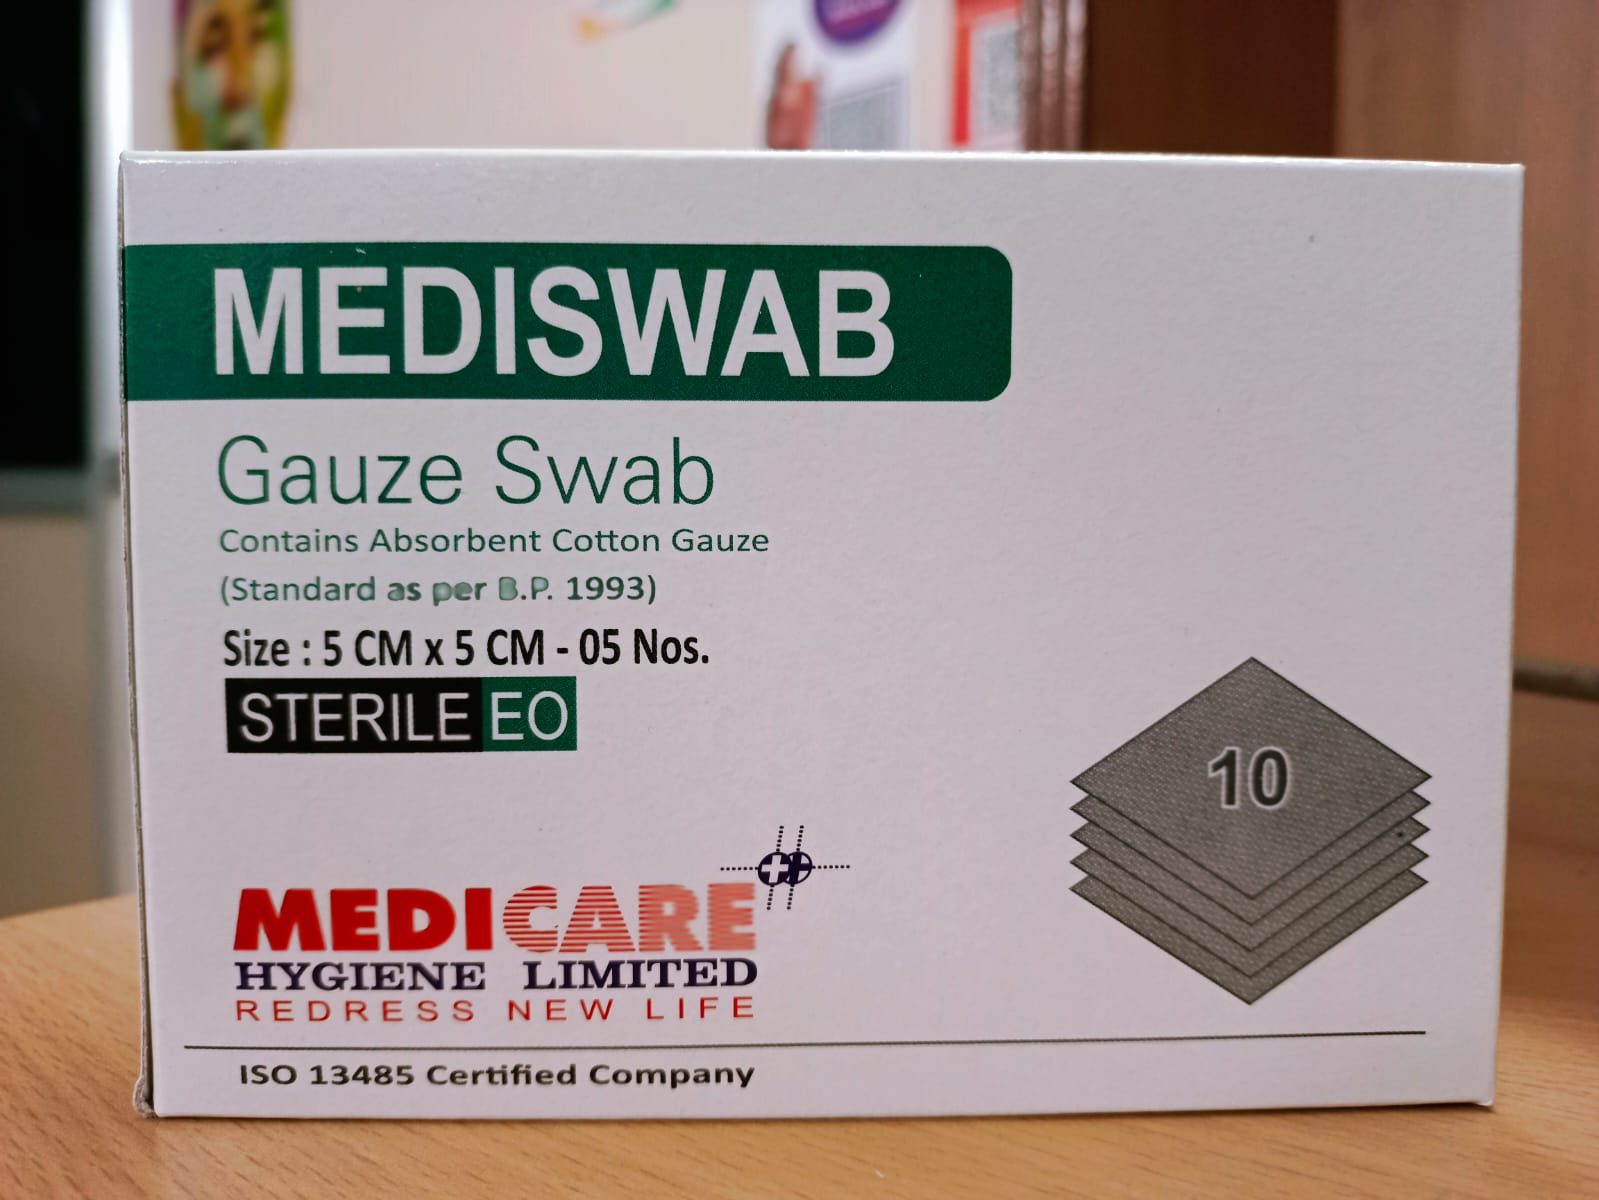 Medica Mediswab Gauze Swab Sterile (5cm X 5cm X 8 ply) - 10 Packs of 4 pcs each